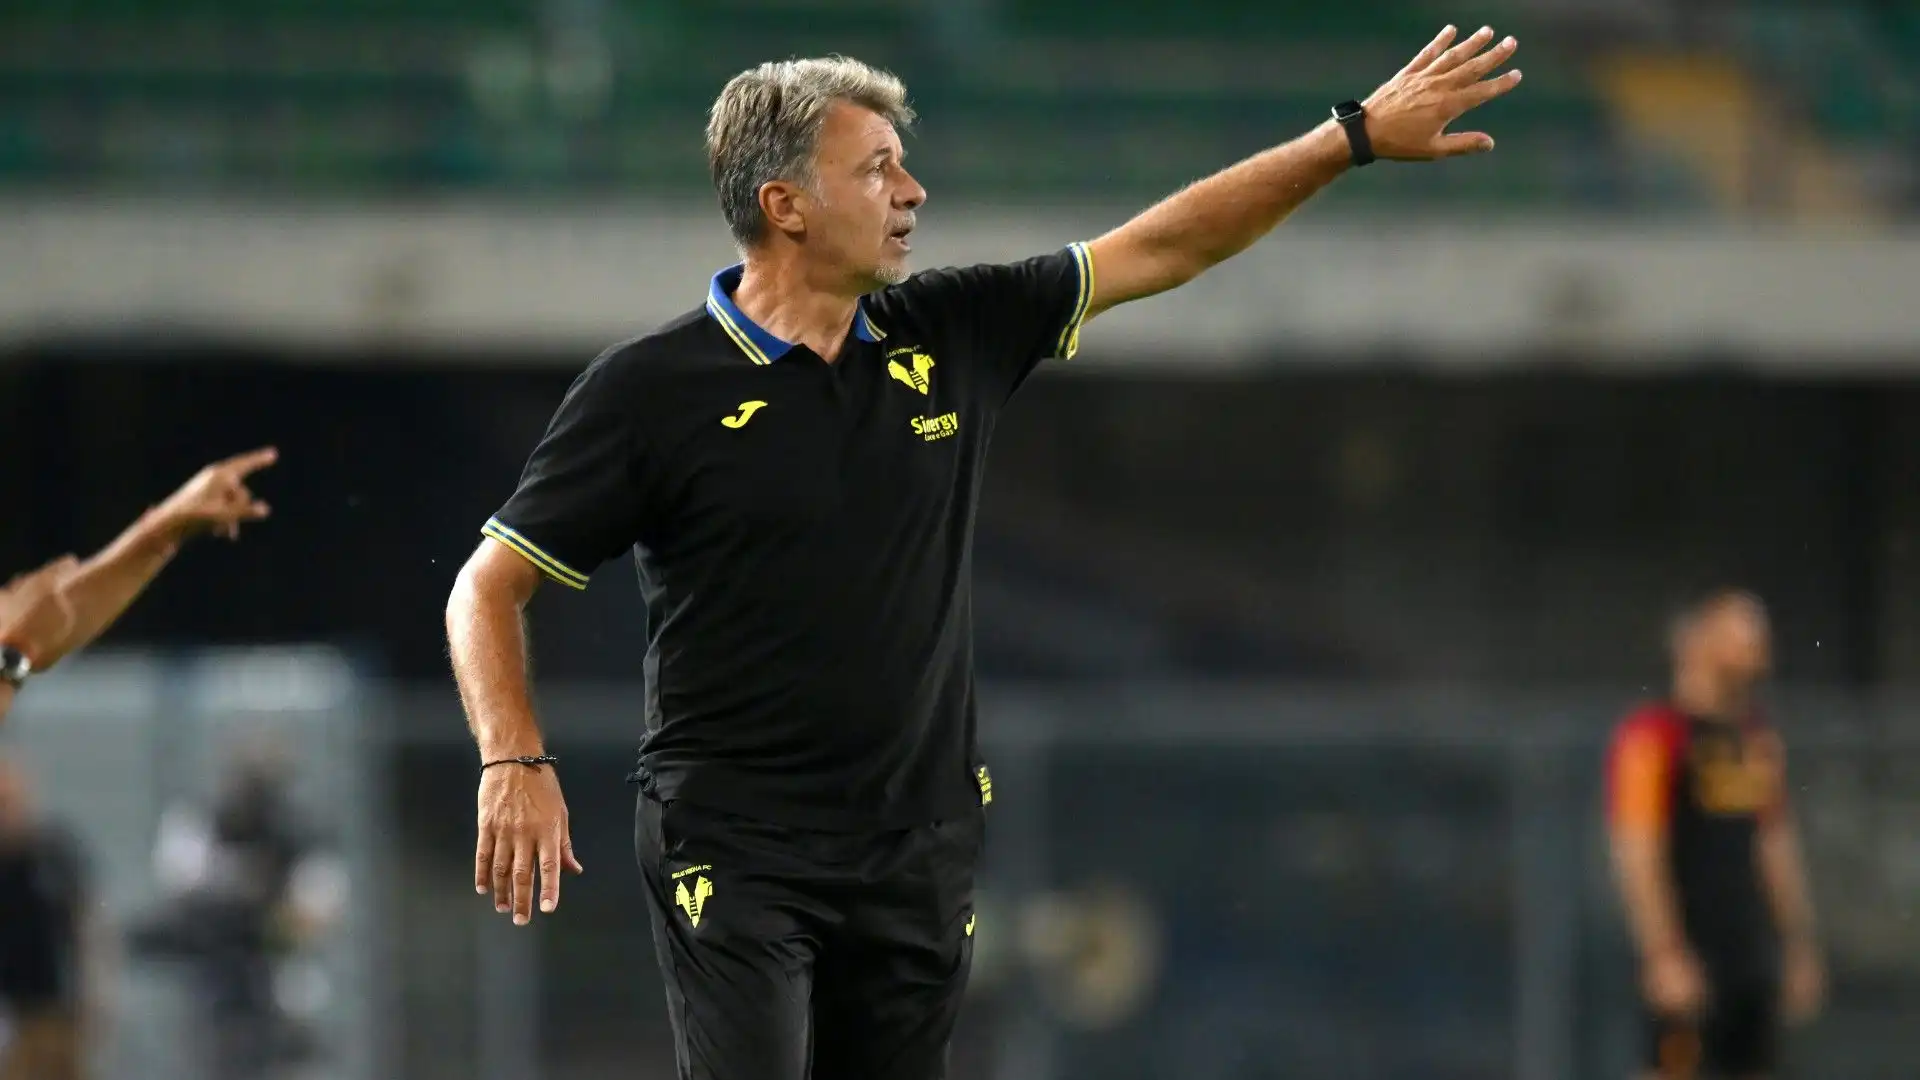 L'Hellas Verona ha sconfitto i giallorossi con il risultato di 2-1